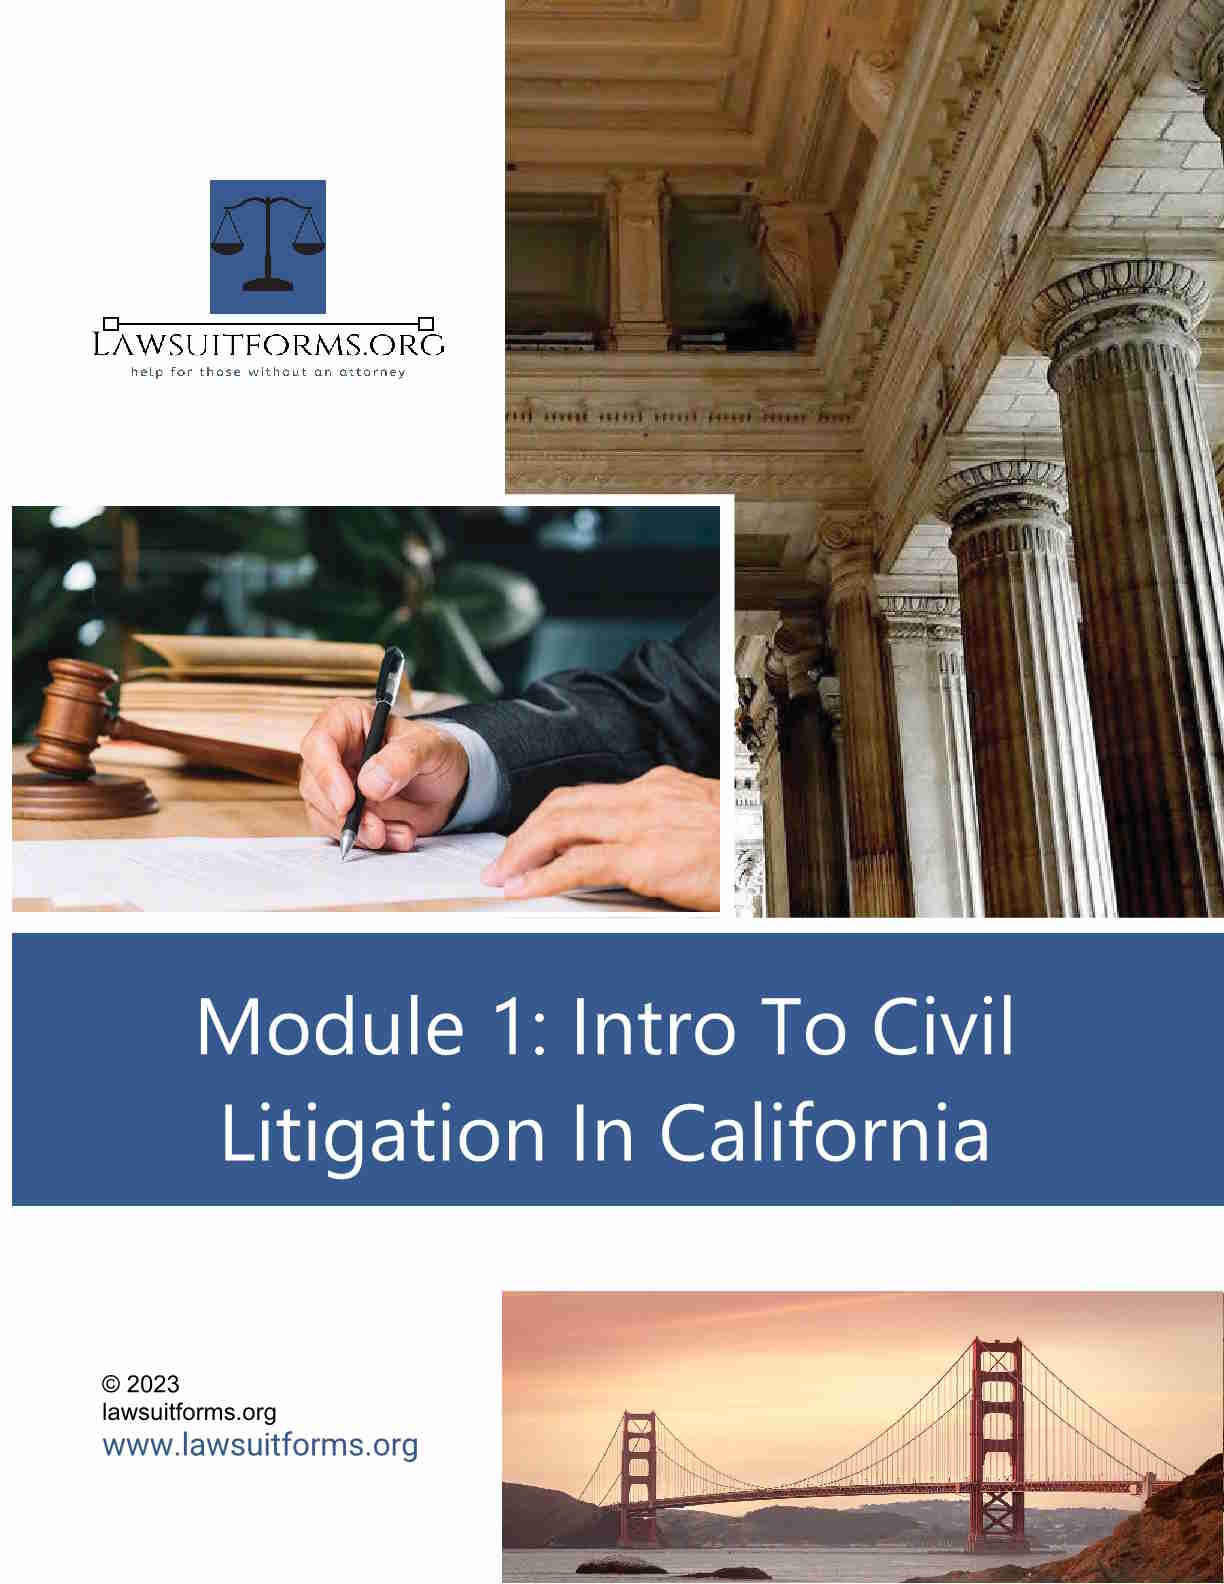 Intro to civil litigation in California